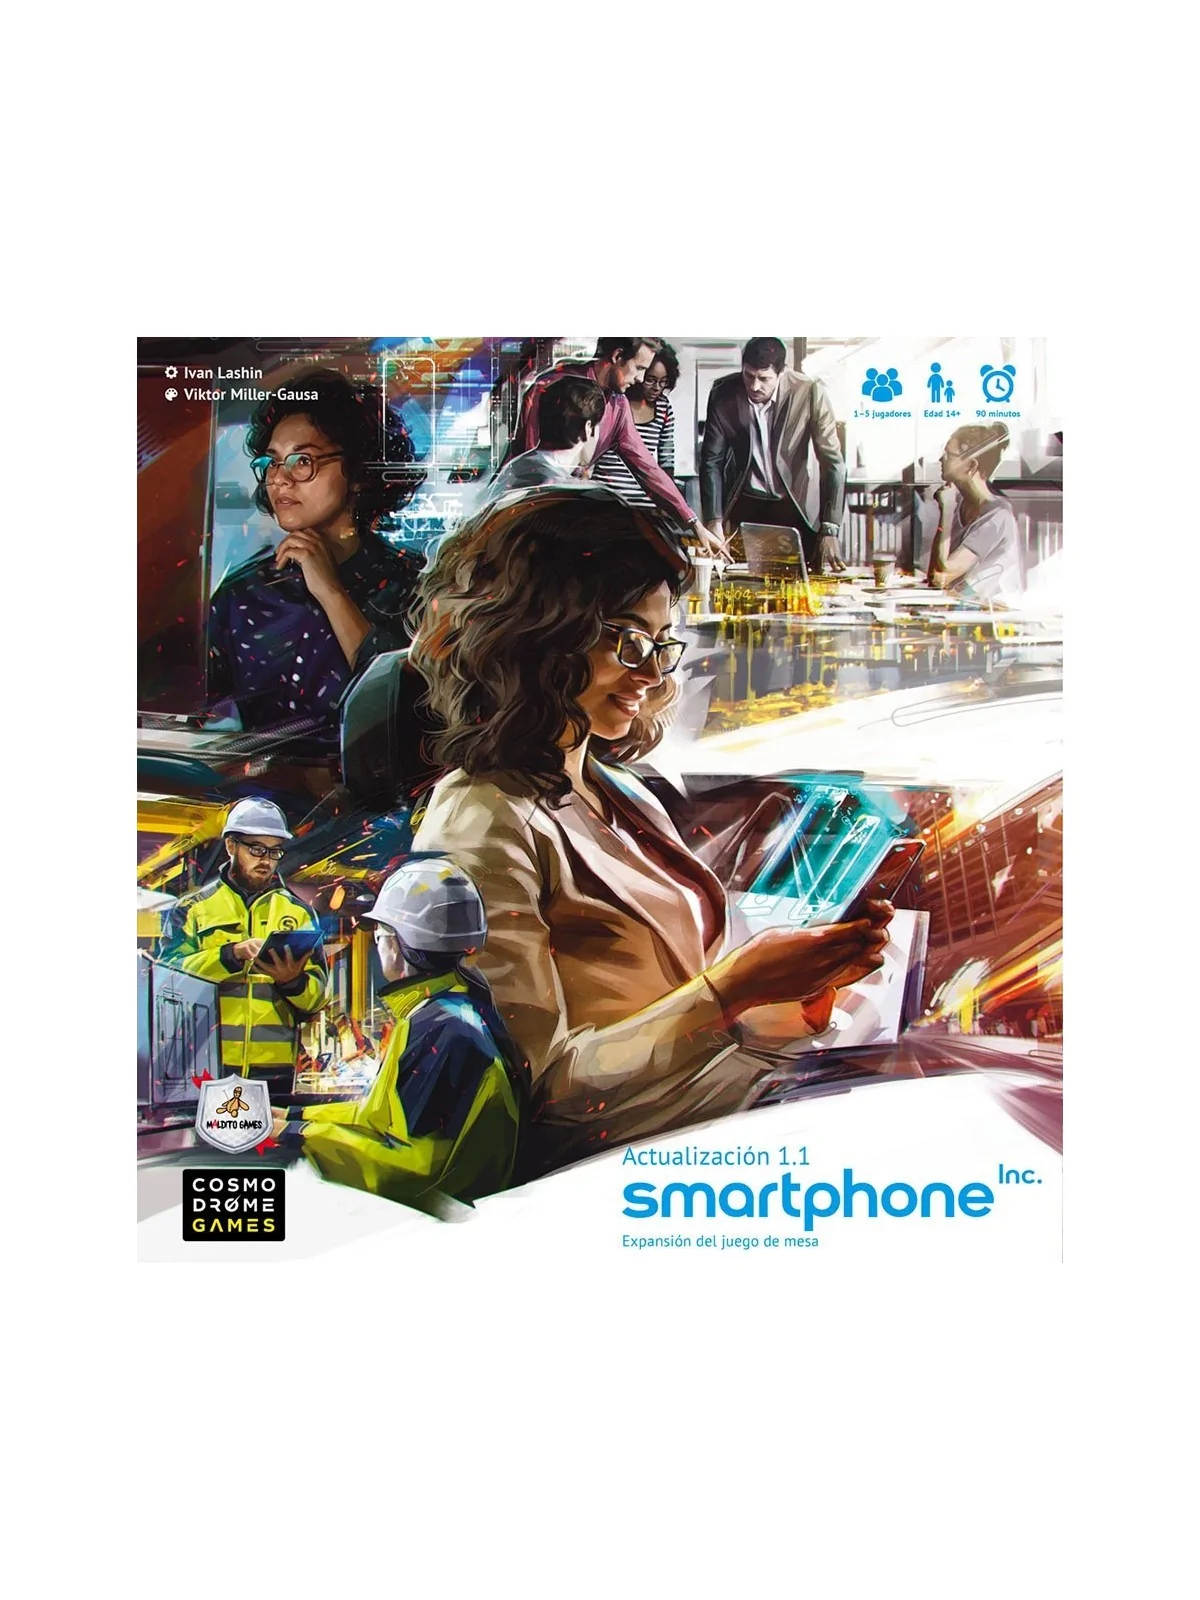 Comprar Smartphone Inc.: Actualización 1.1 barato al mejor precio 22,5